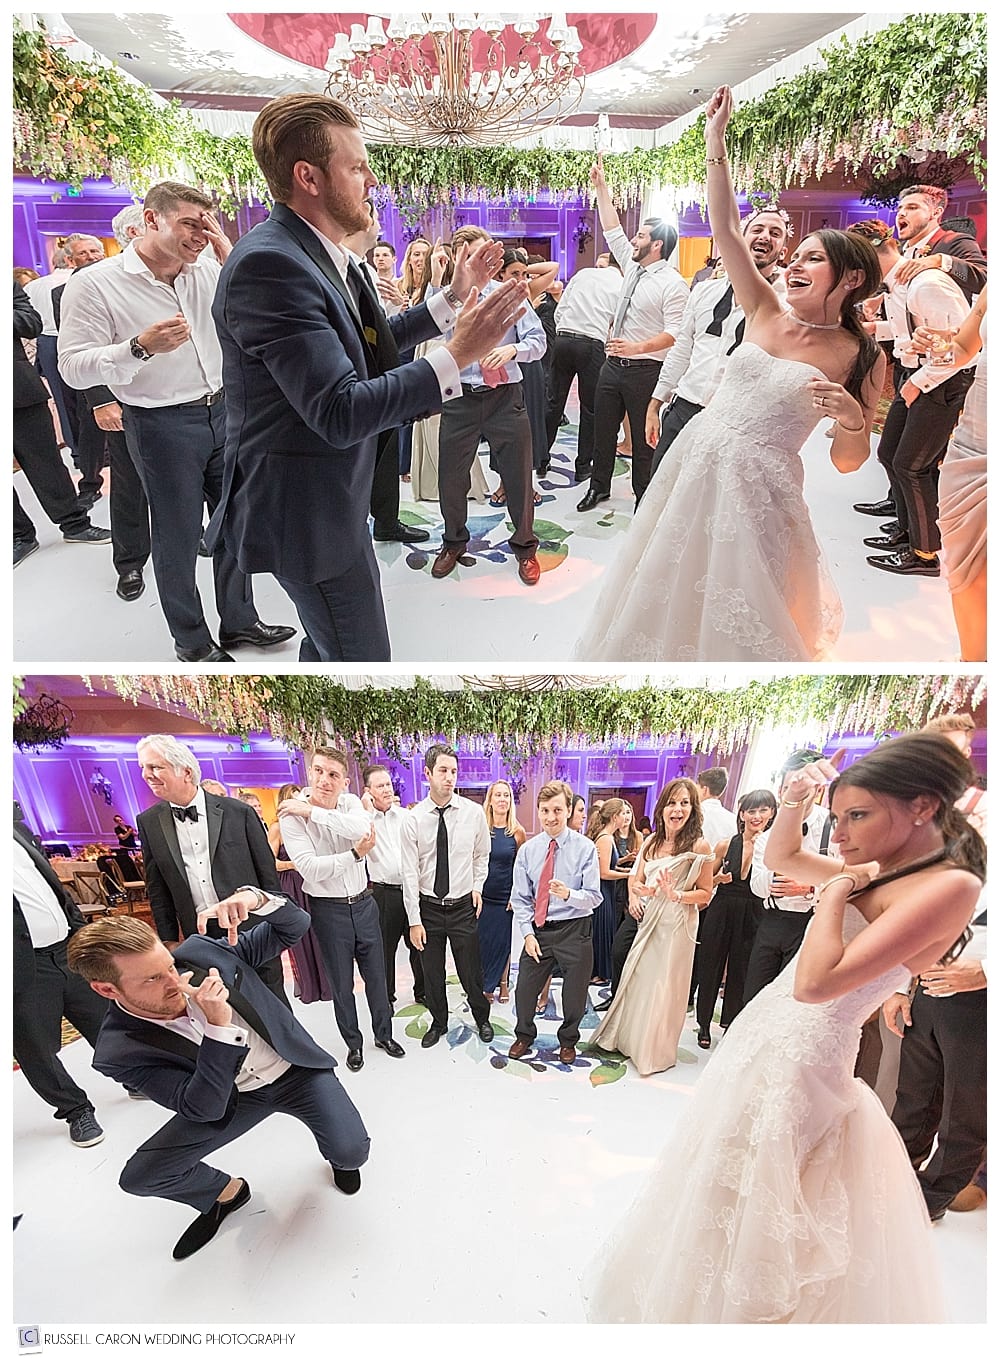 dancing during Samoset Resort wedding